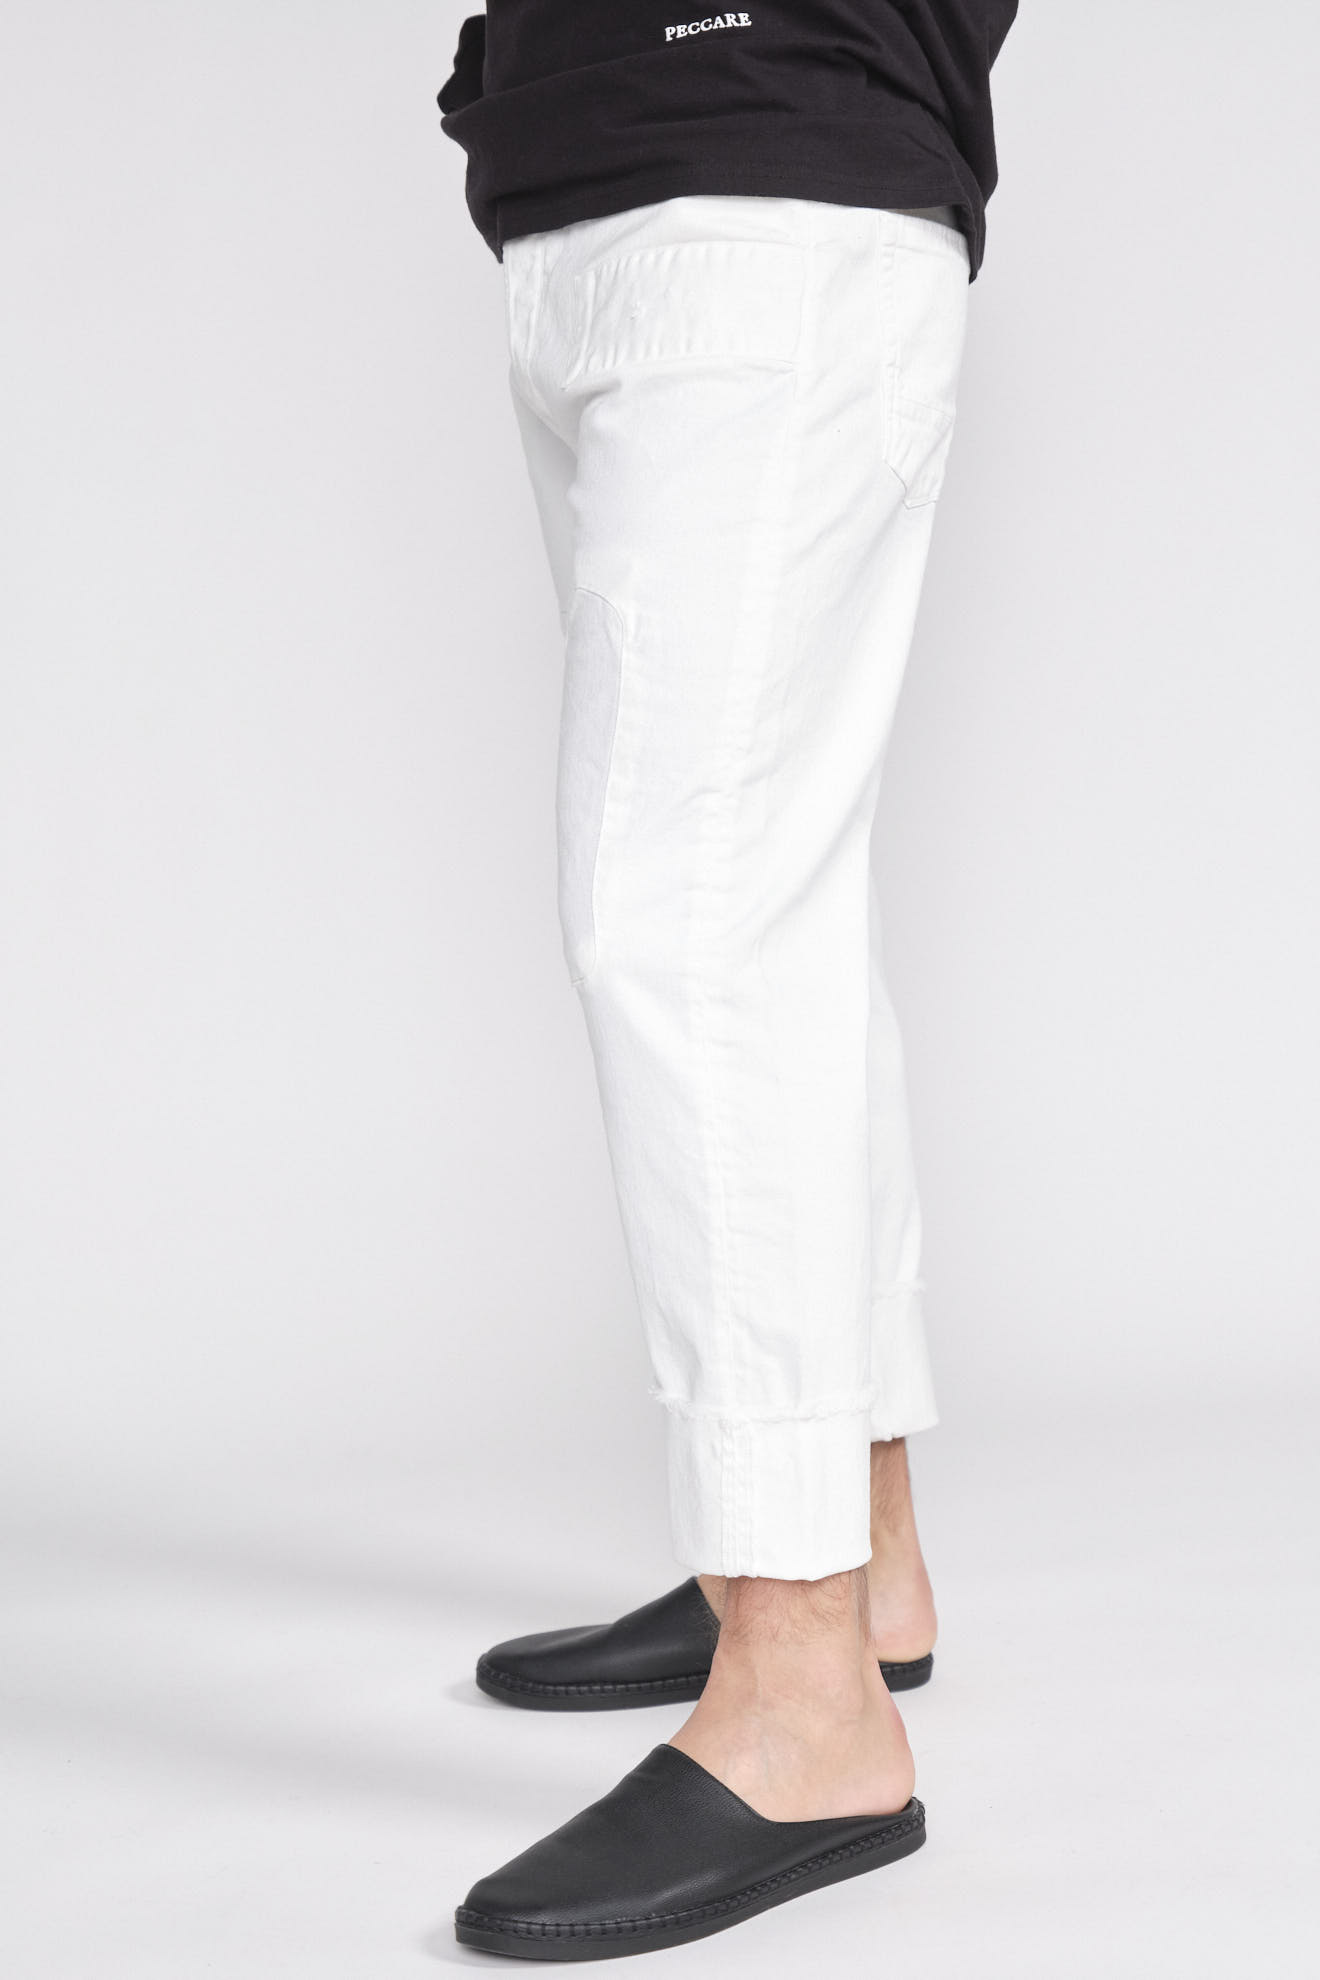 maurizio massimino Jose - Pantalon en jean avec patchs en denim blanc 48